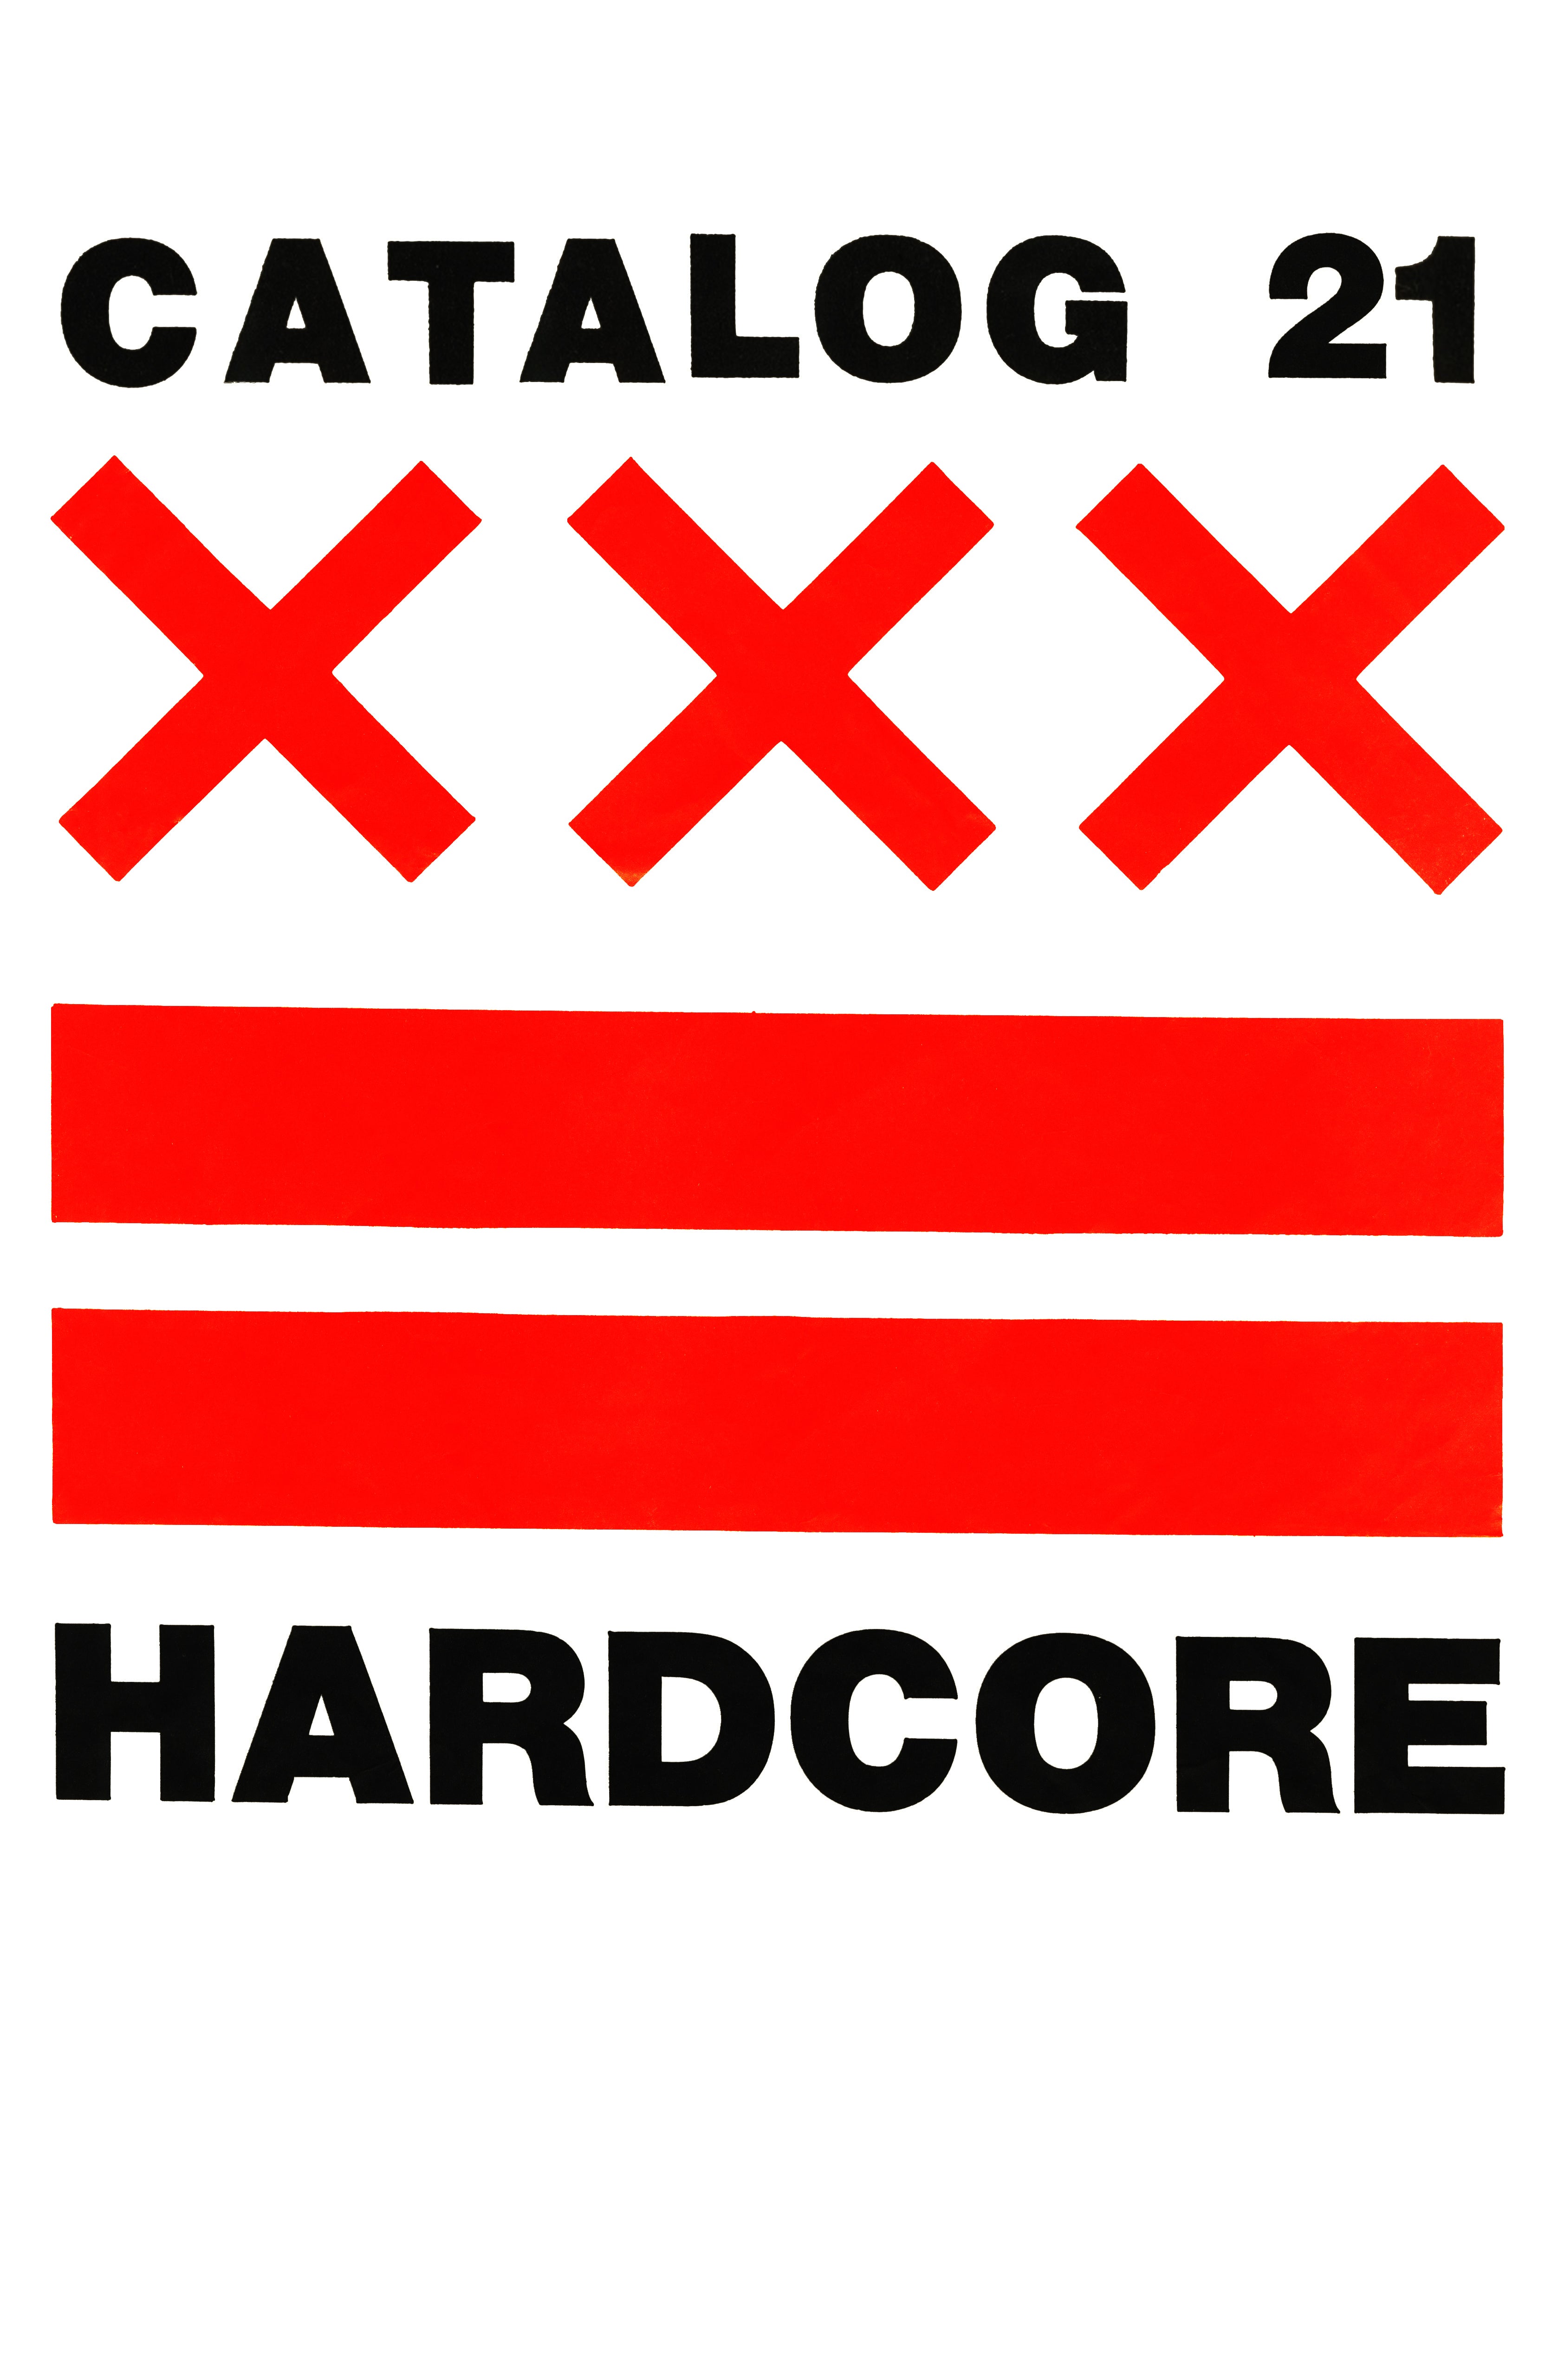 Catalog #21: Hardcore